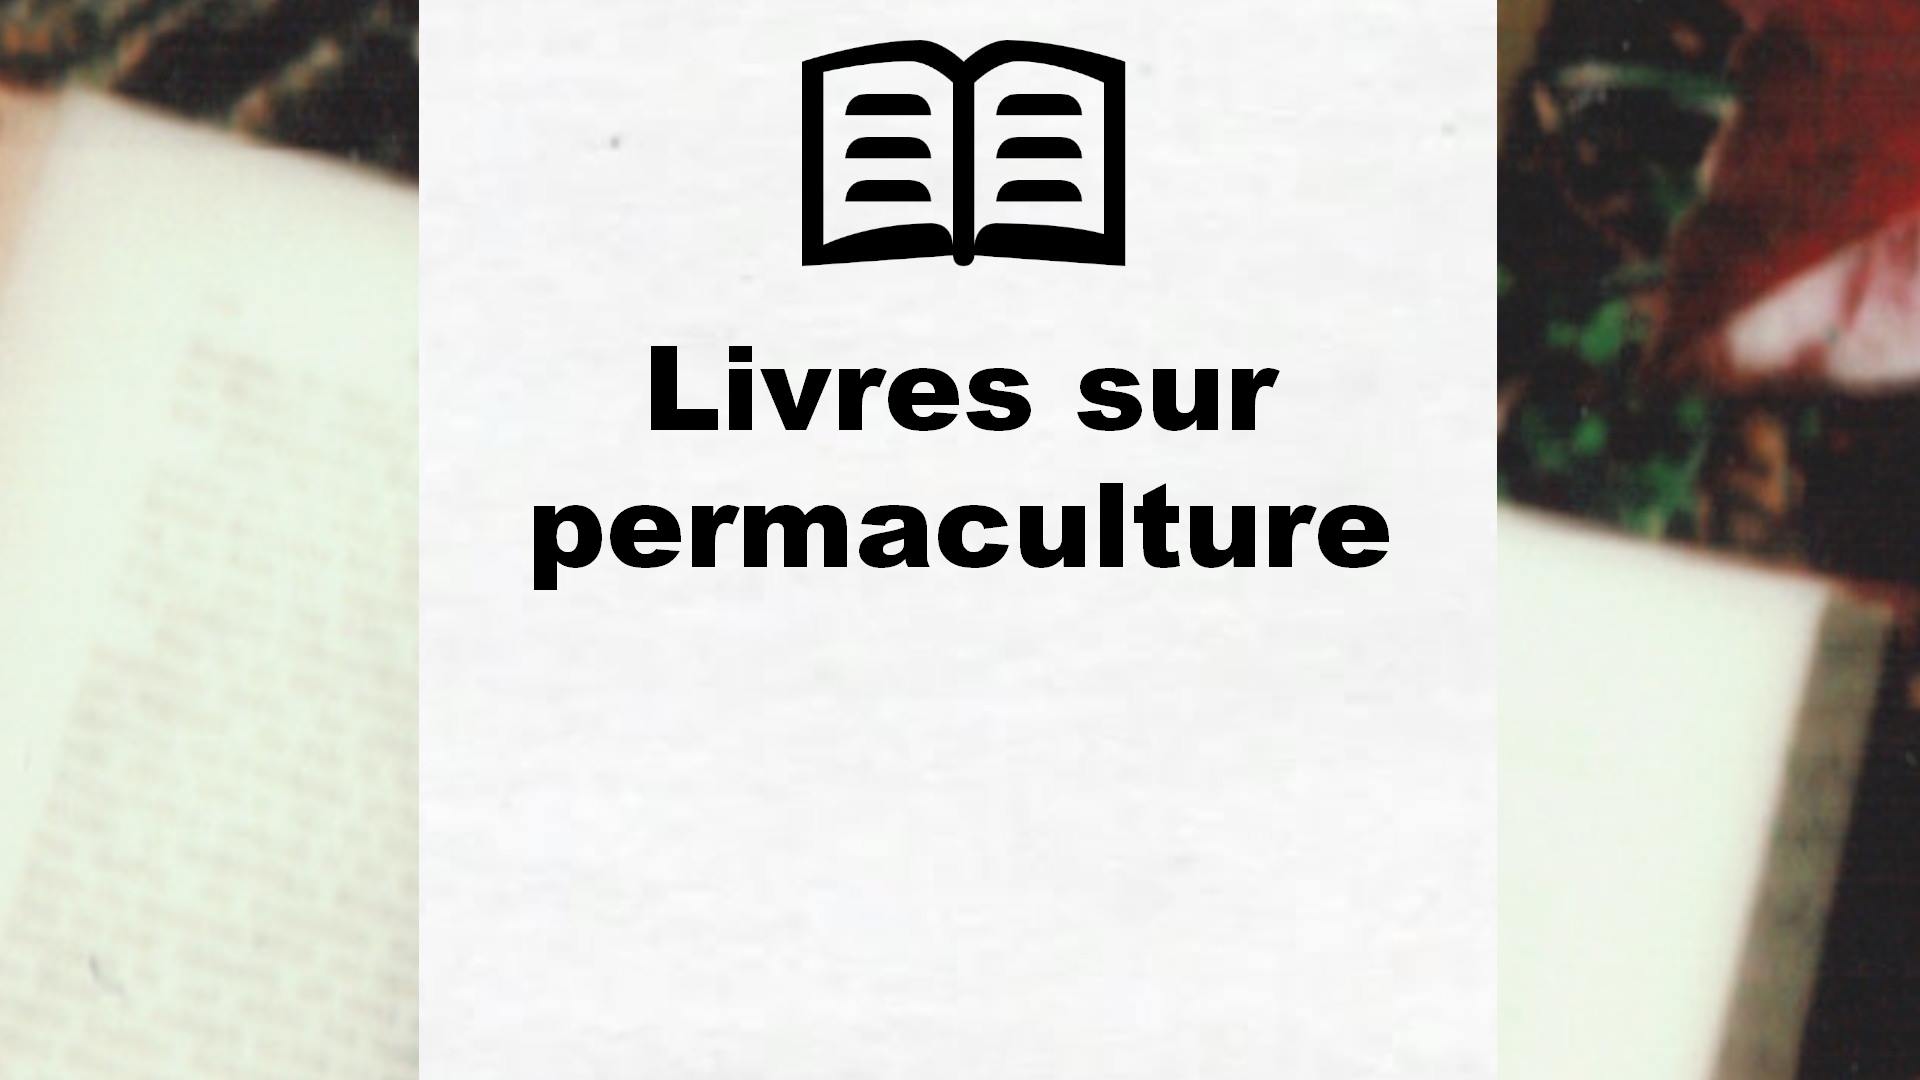 Livres sur permaculture